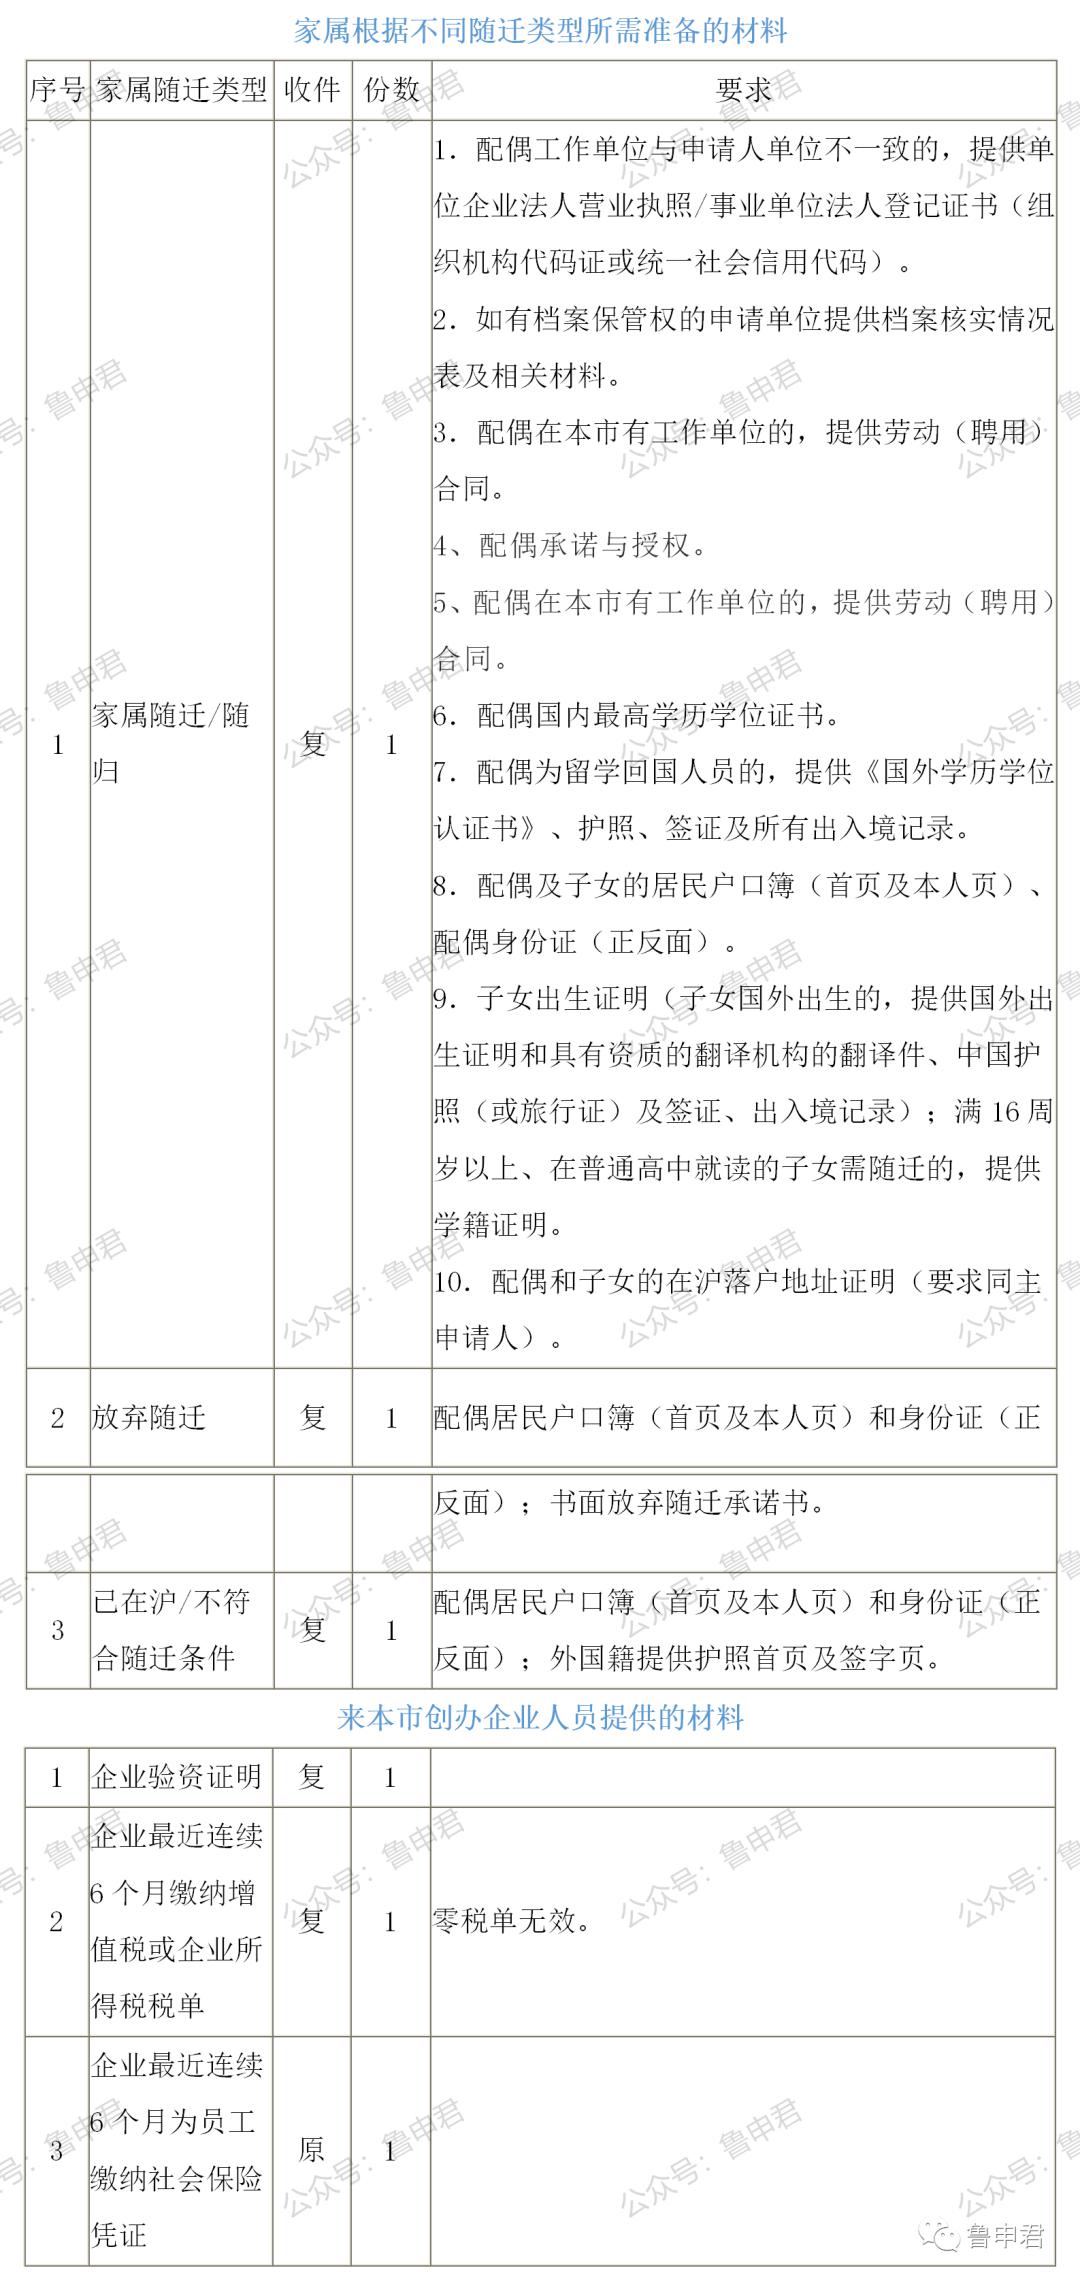 留学生落户上海,需要什么条件 如何准备材料 详细申请攻略来啦 附常见问答